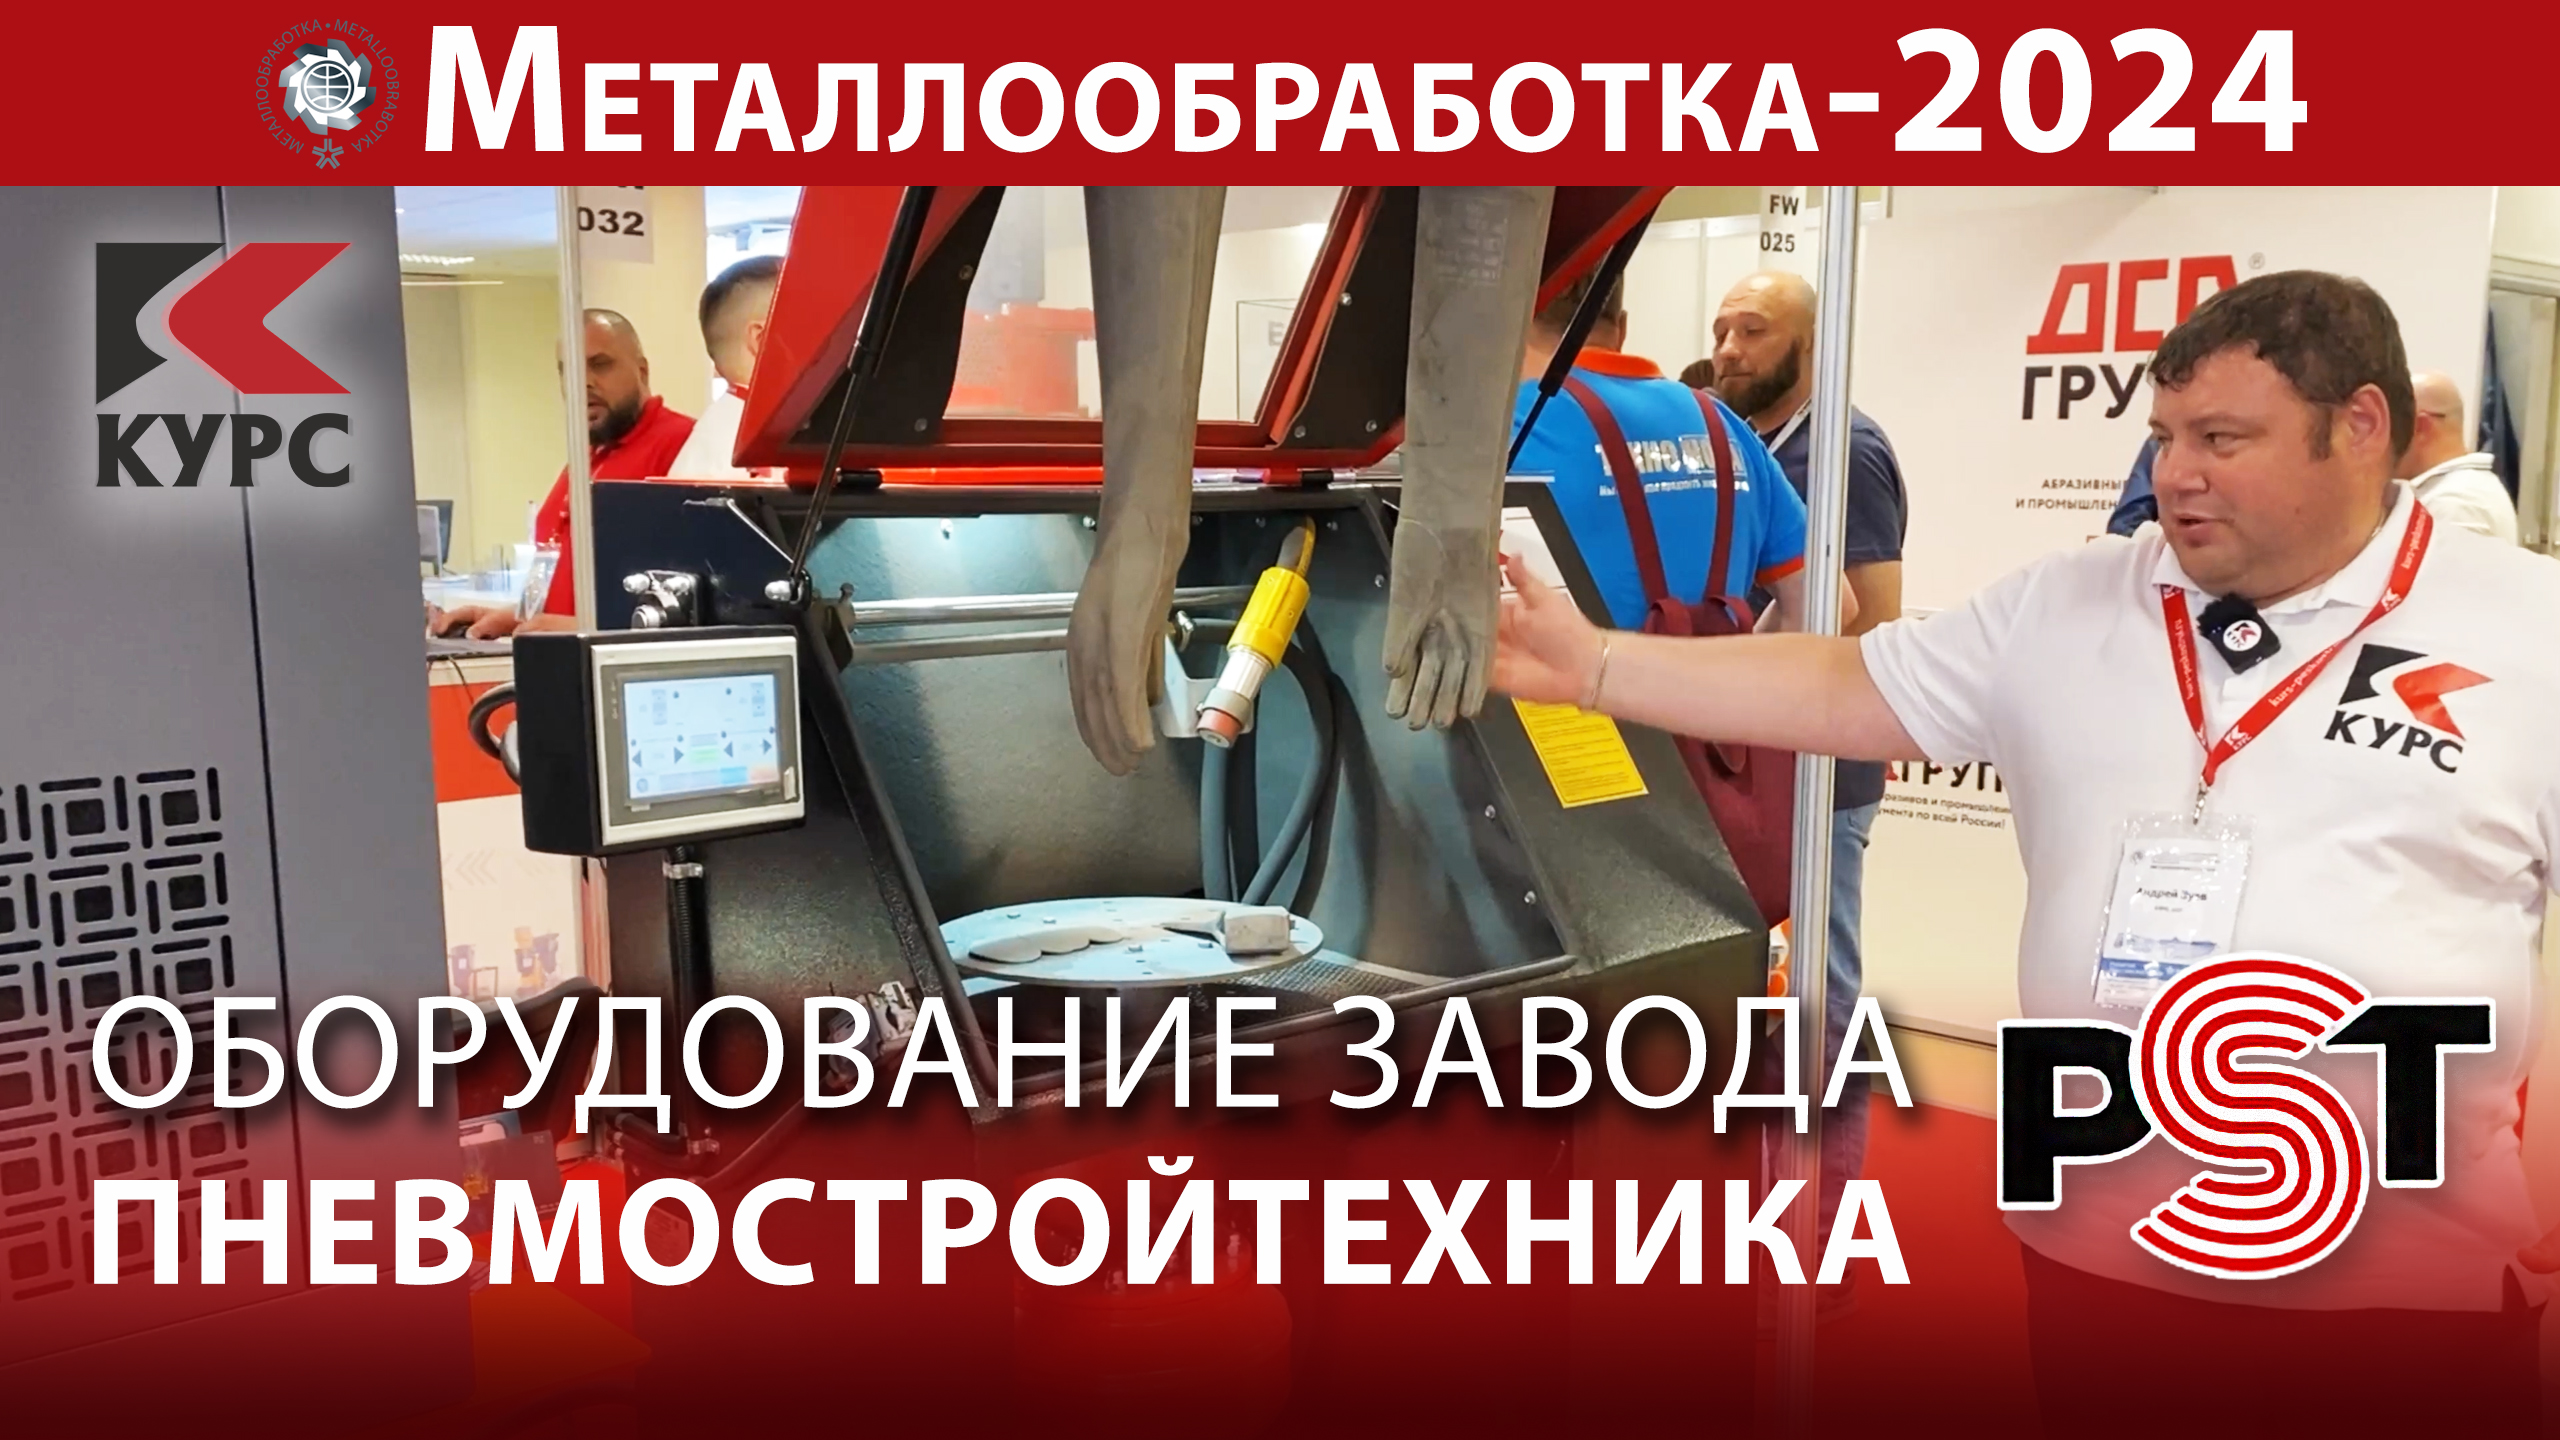 Оборудование завода Пневмостройтехника на выставке "Металлообработка-2024"